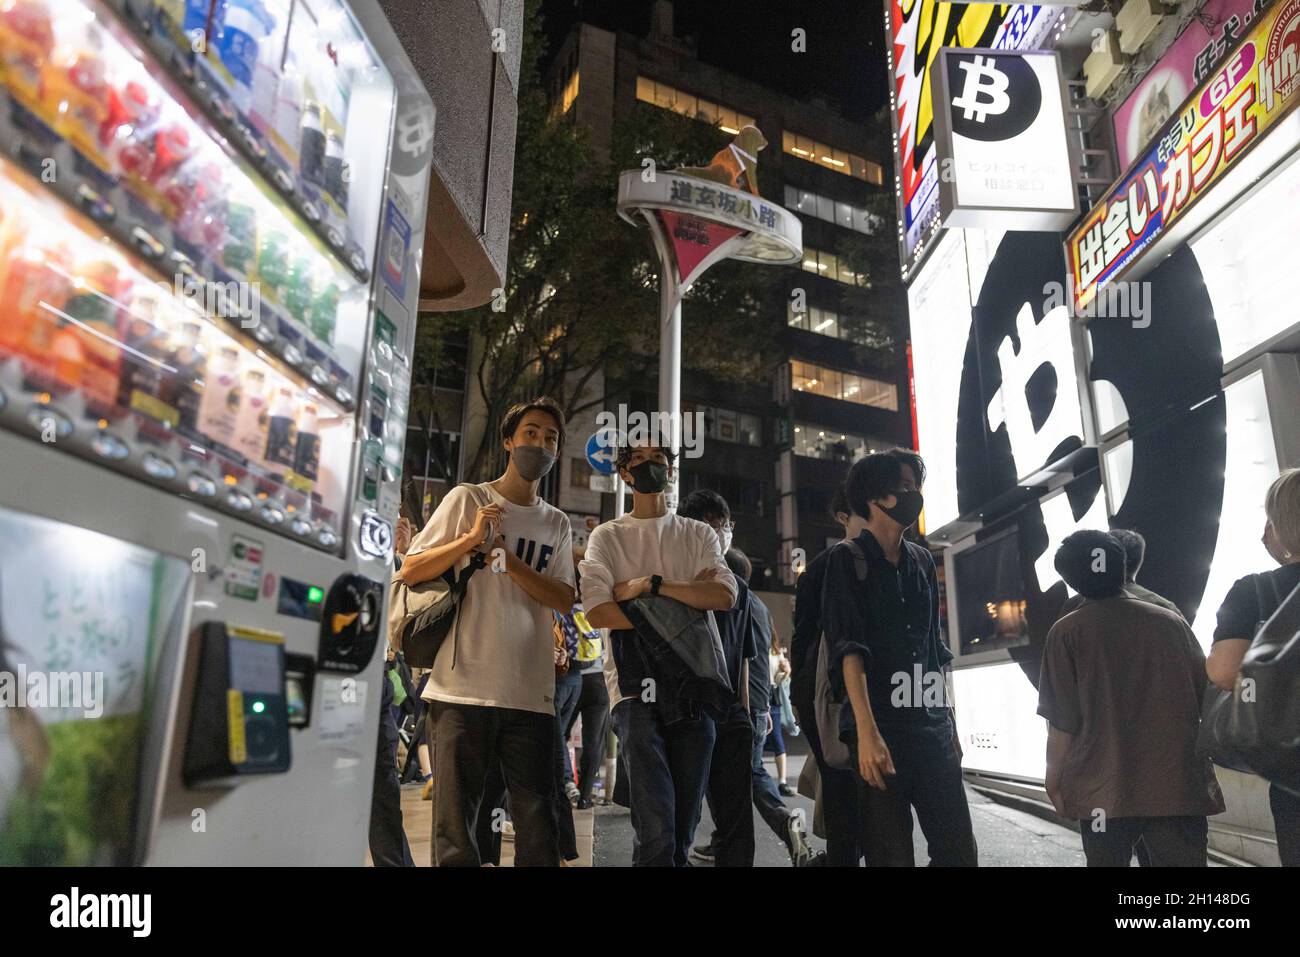 Maskierte Menschen gehen durch eine Gasse im Shibuya-Viertel in Tokio.das Nachtleben im Unterhaltungsviertel von Tokio Shibuya normalisiert sich wieder, nachdem der mit dem Coronavirus verbundene Ausnahmezustand in Tokio aufgehoben wurde. Restaurants und Bars können abends geöffnet sein und wieder Alkohol servieren. (Foto von Stanislav Kogiku / SOPA Images/Sipa USA) Stockfoto